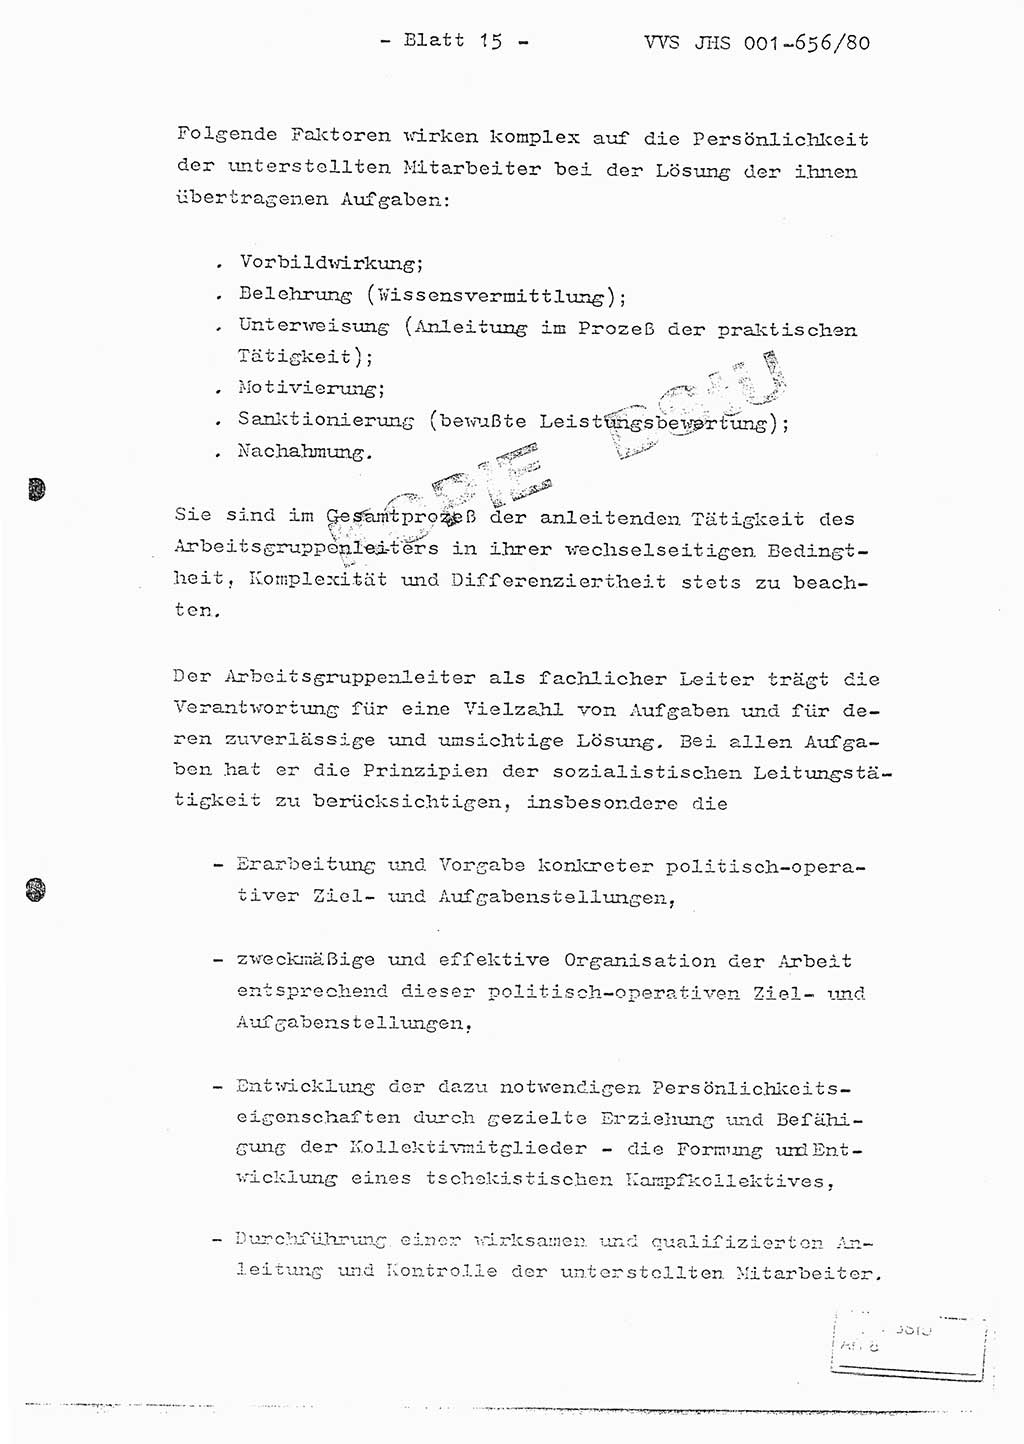 Fachschulabschlußarbeit Unterleutnant Christian Kätzel (Abt. ⅩⅣ), Ministerium für Staatssicherheit (MfS) [Deutsche Demokratische Republik (DDR)], Juristische Hochschule (JHS), Vertrauliche Verschlußsache (VVS) 001-656/80, Potsdam 1980, Blatt 15 (FS-Abschl.-Arb. MfS DDR JHS VVS 001-656/80 1980, Bl. 15)